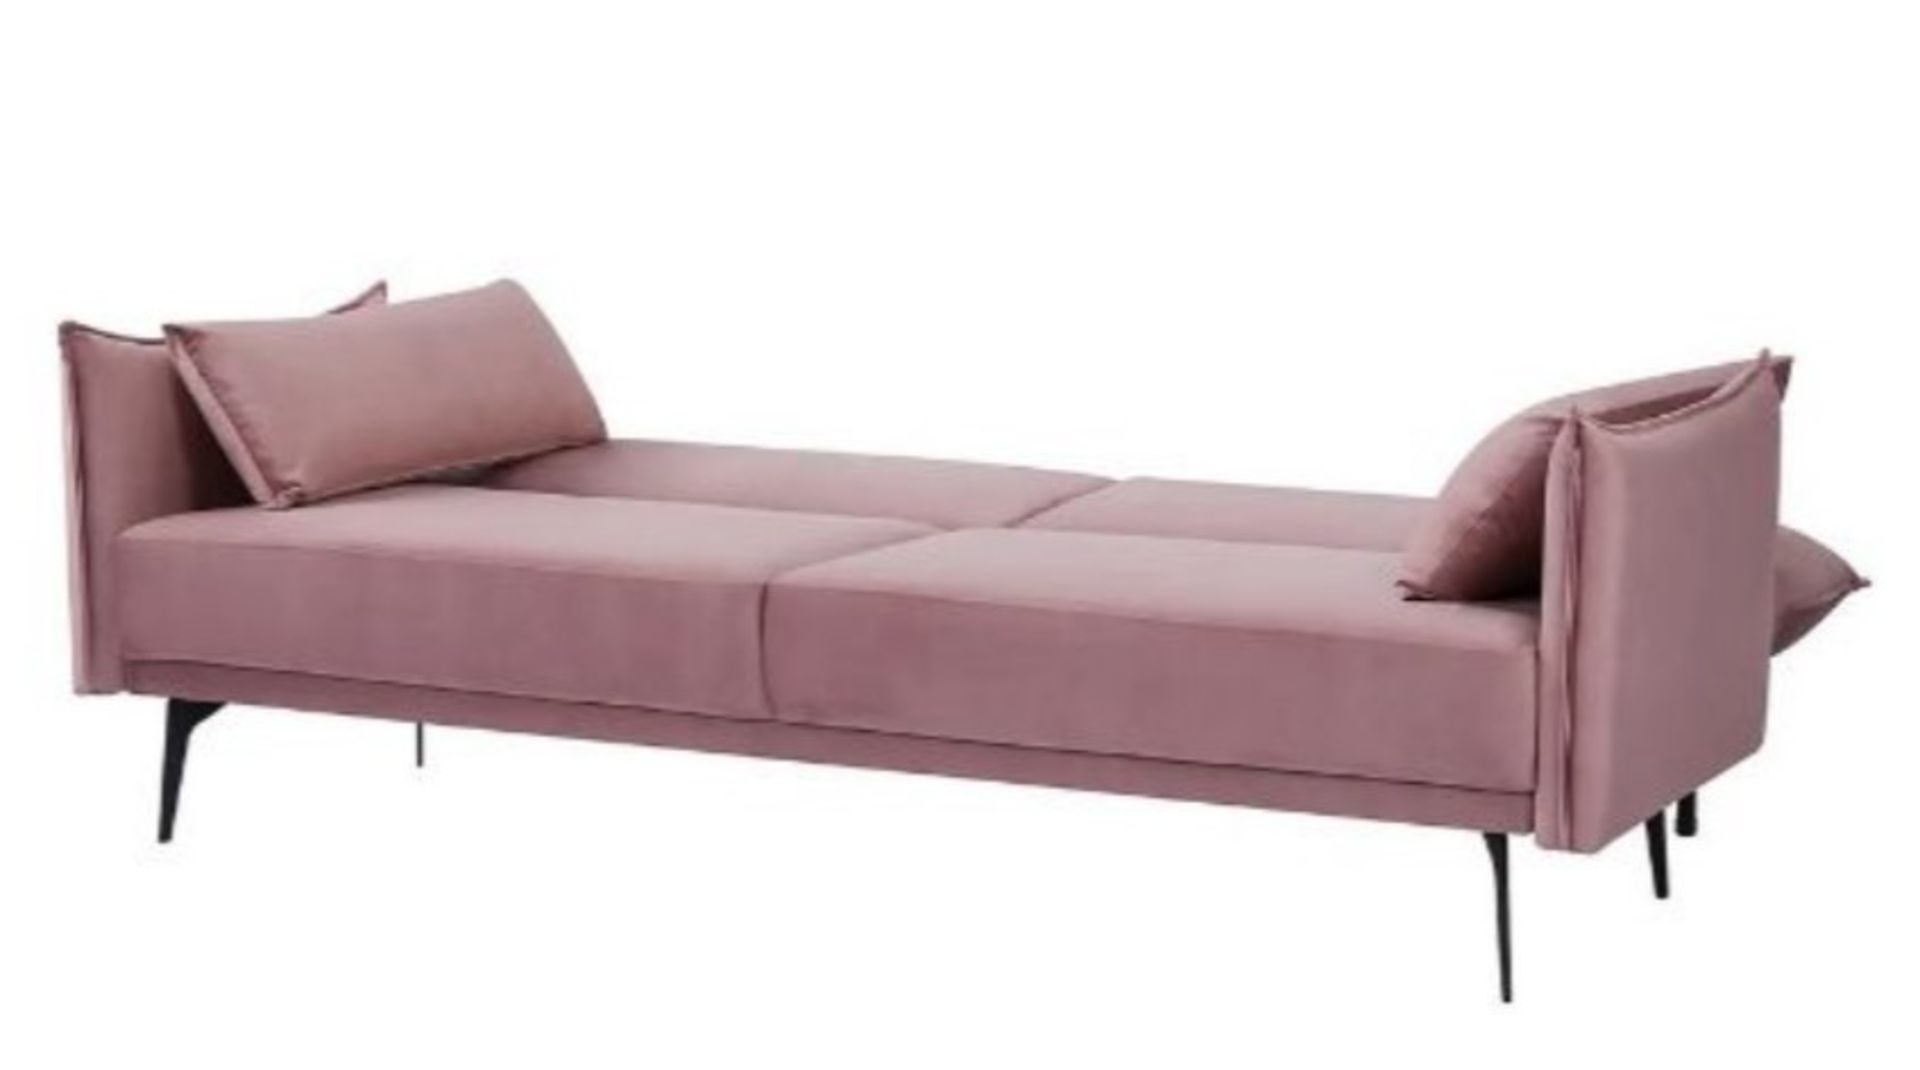 Sutton Sofa Bed Blush. Dimensions: (Sofa-H88x W208x D86cm, Bed-H45x W115x D188cm). - Image 6 of 15